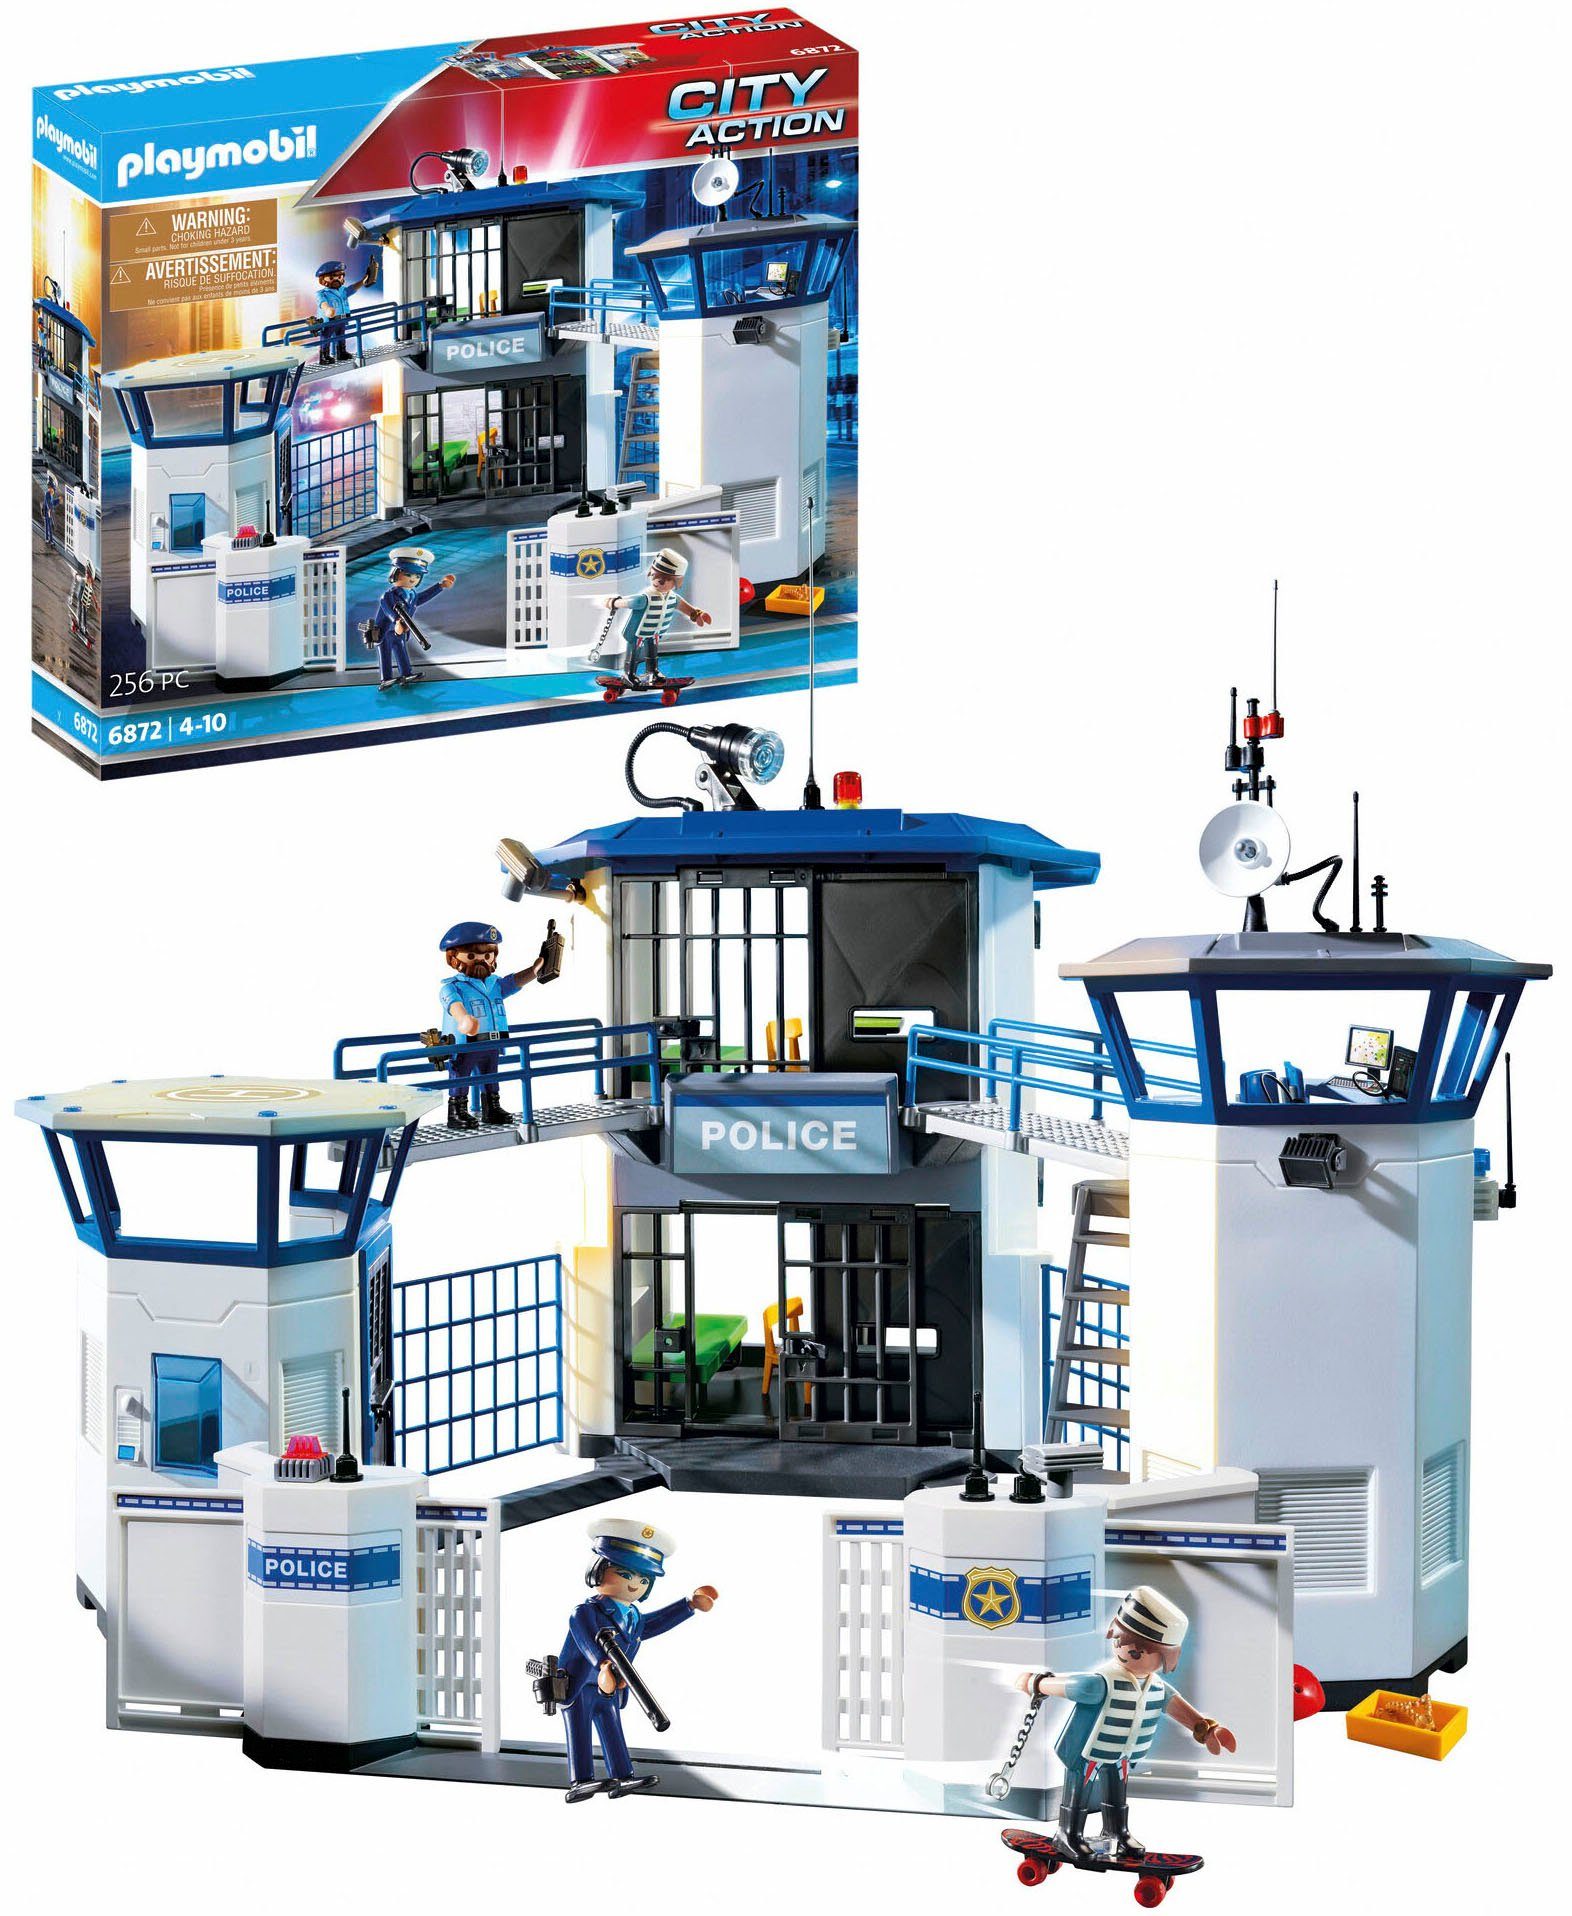 Playmobil® Constructie-speelset Politiebureau met gevangenis (6872), City Made in Germany (256 stuks) in de online winkel | OTTO